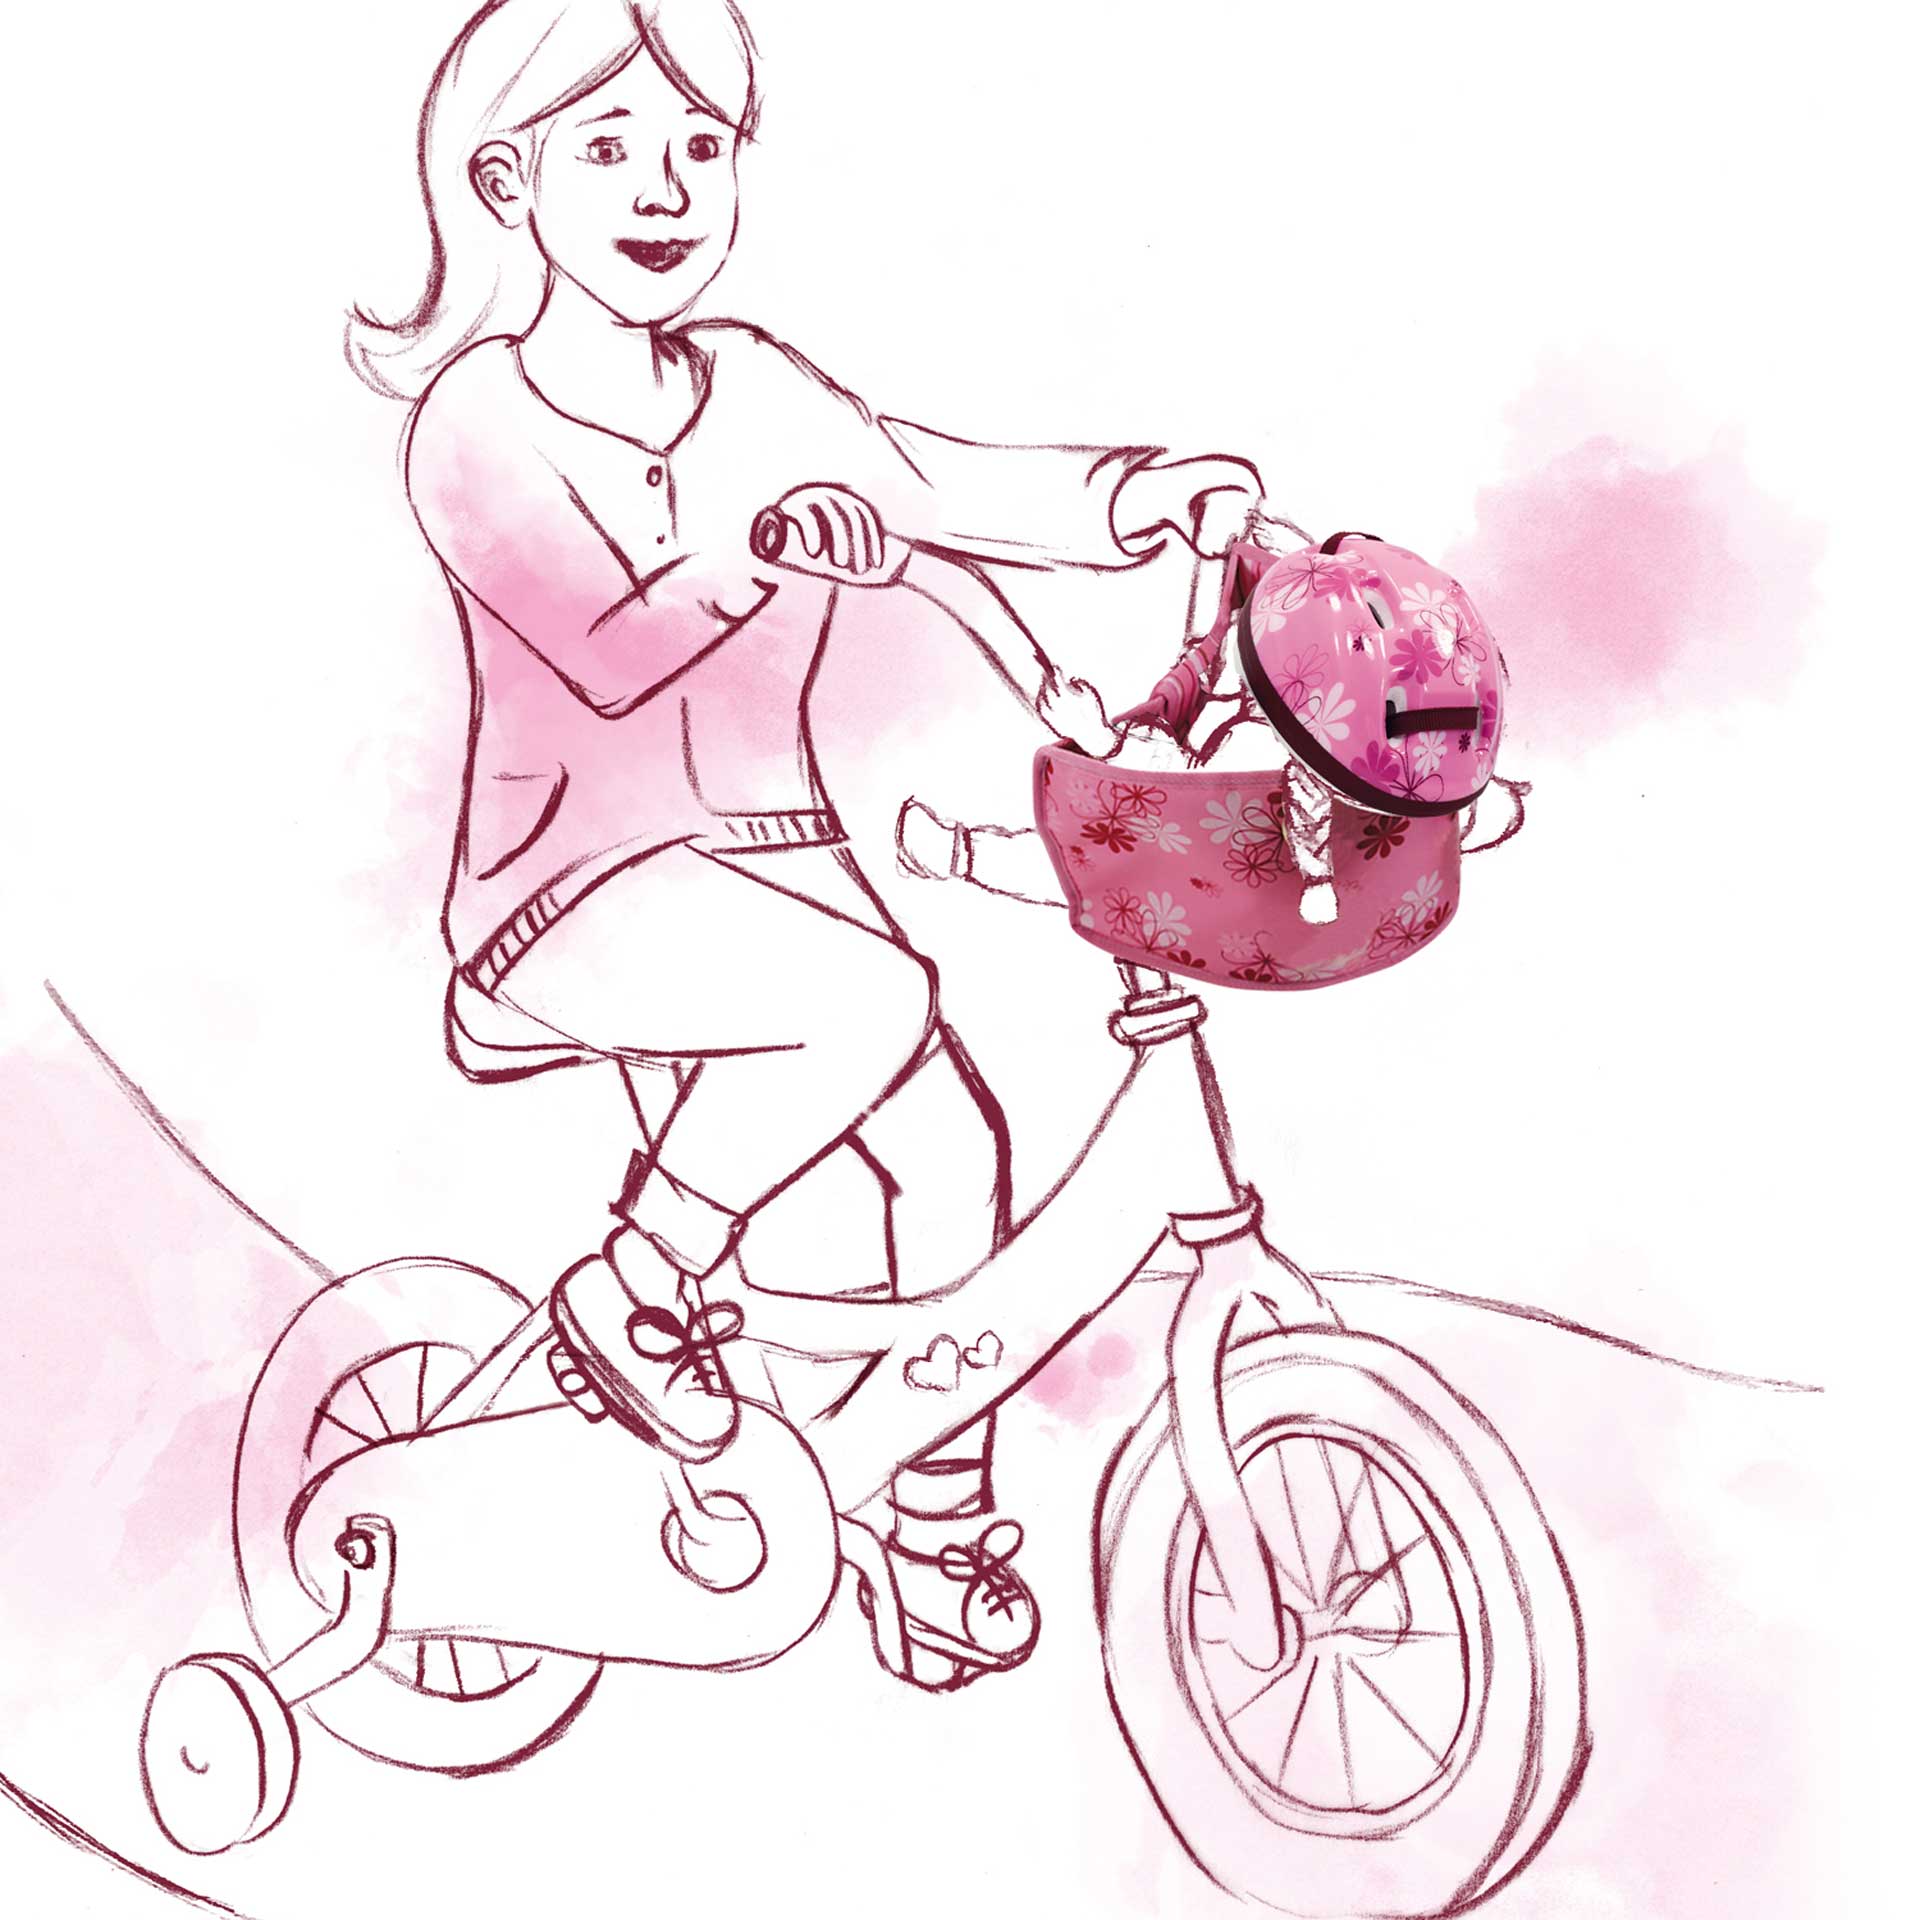 fahrradhelm-rollerhelm-reithelm-fahrradsitz-rollersitz-goetz-zeichnung